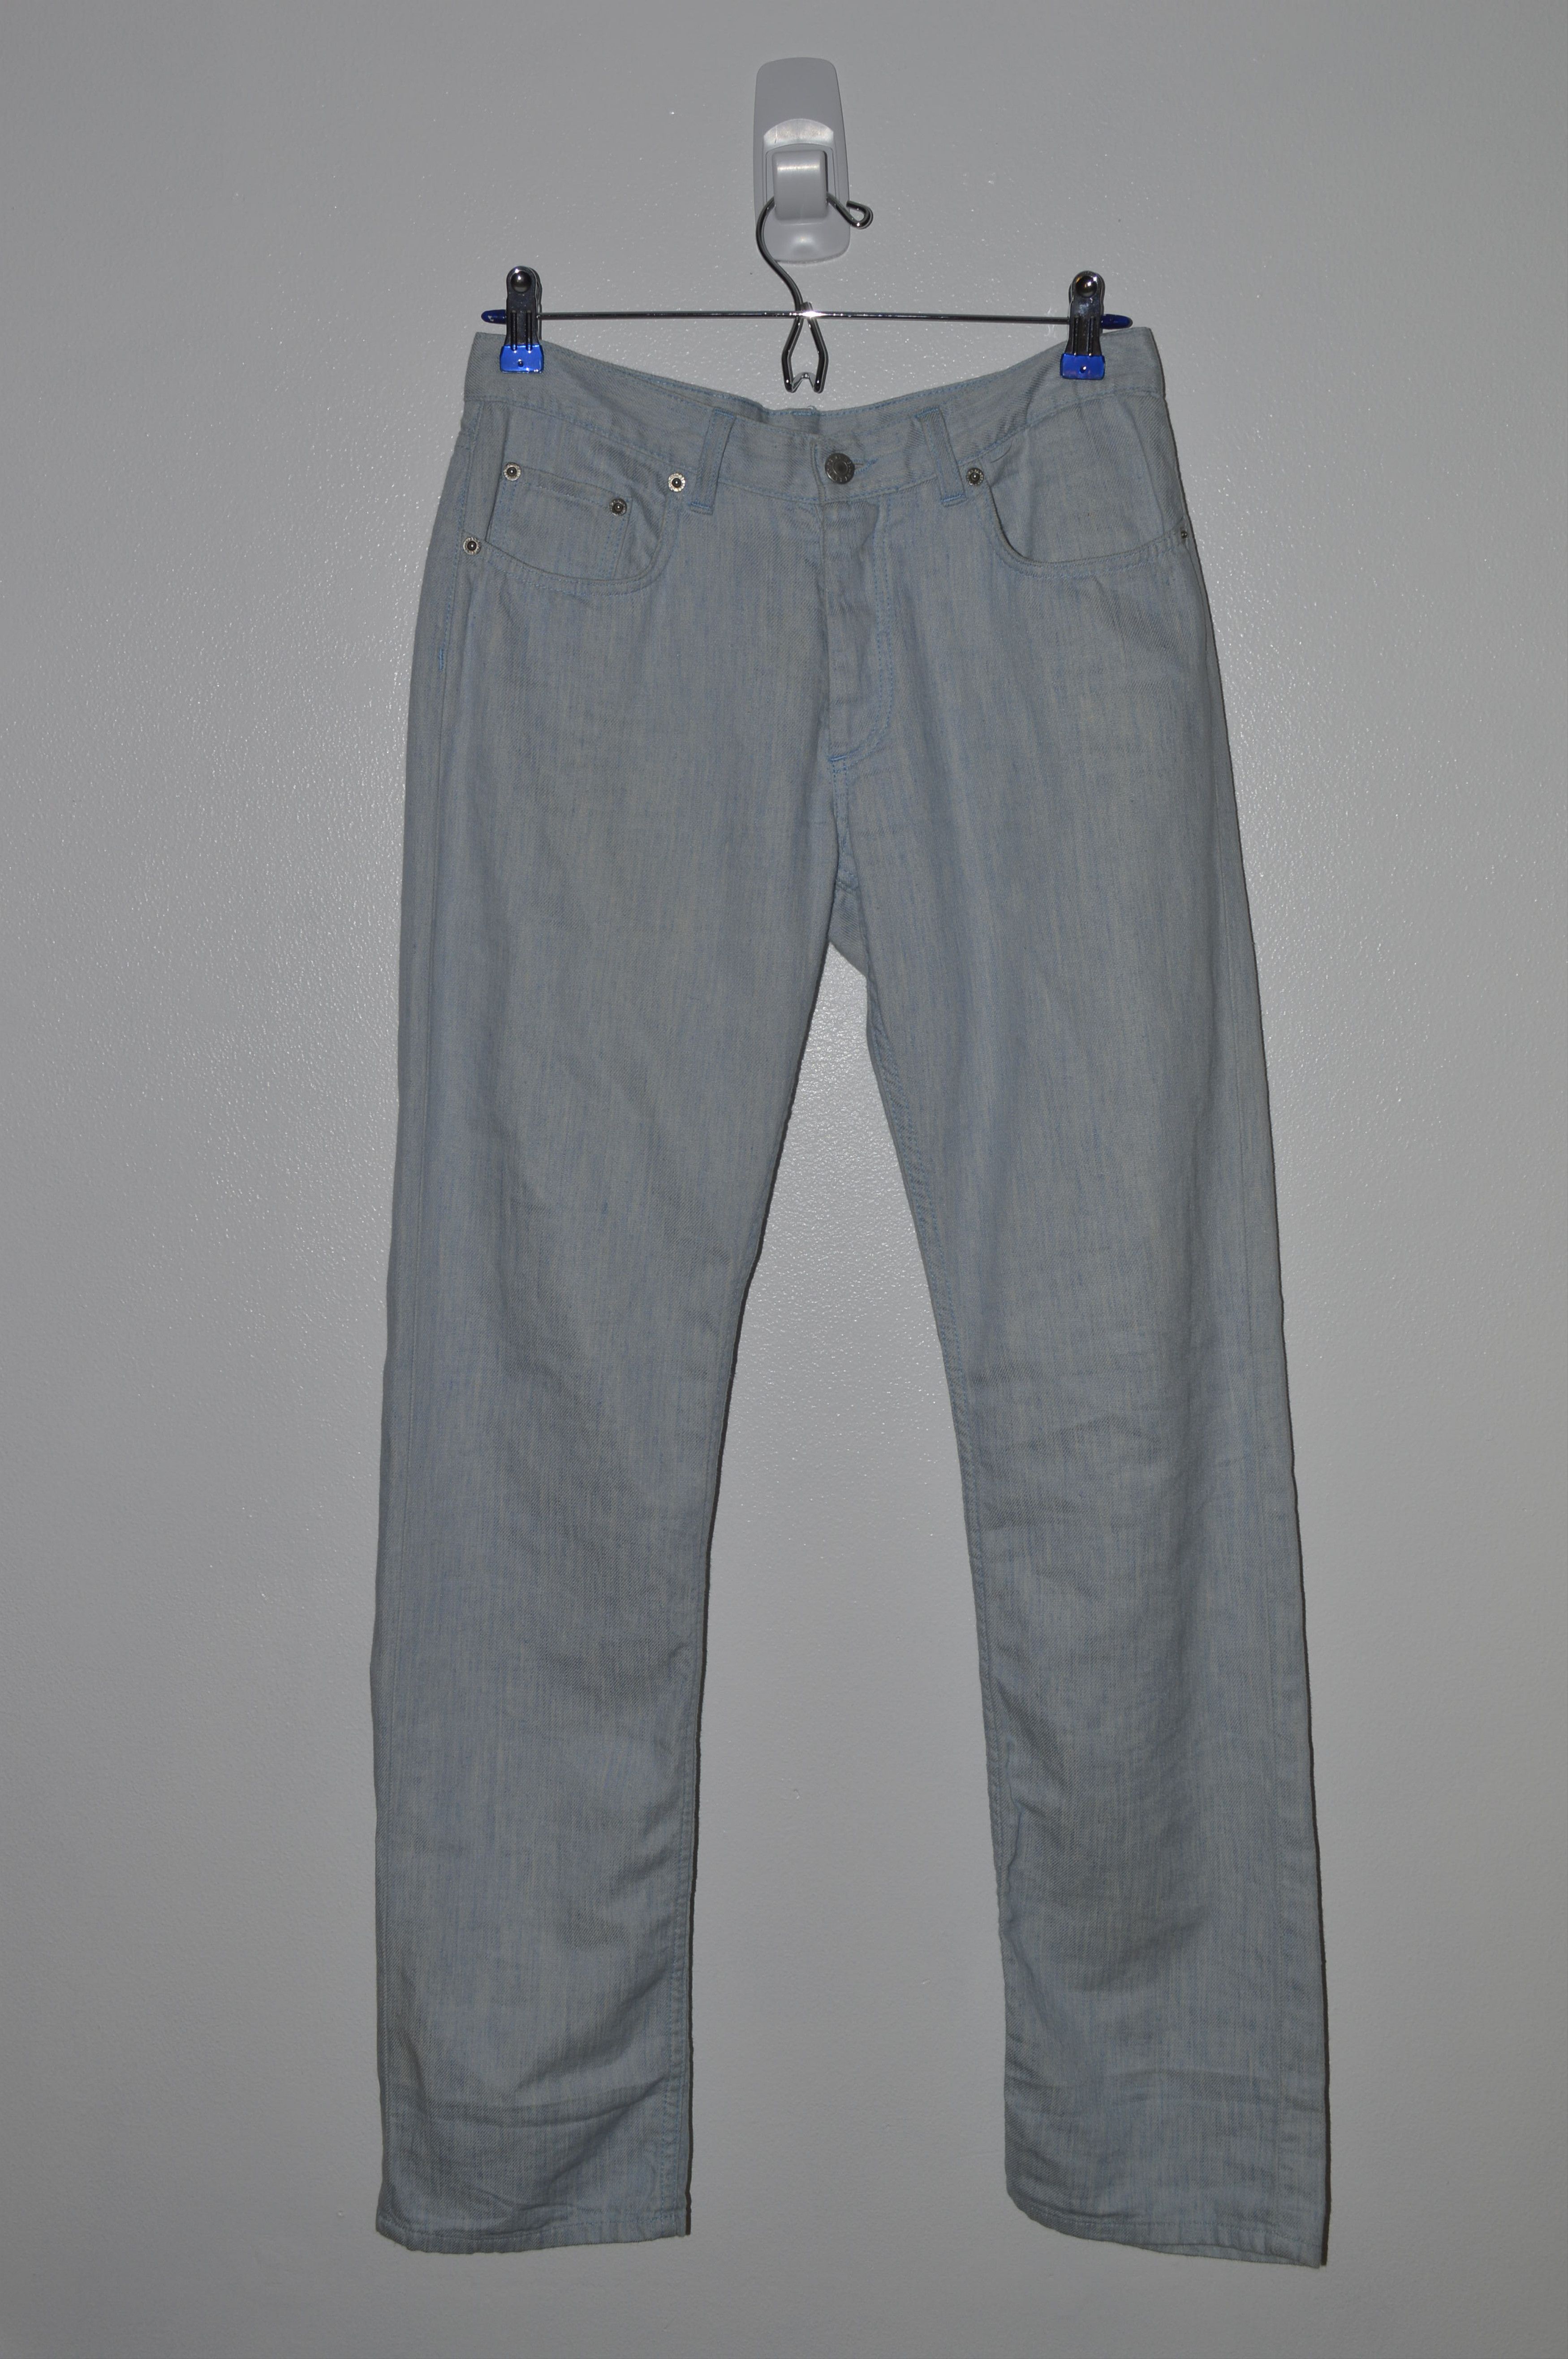 Helmut Lang SS/98 OG Lang Linen/Cotton Light Slim Jeans Mainline Size US 29 - 10 Preview